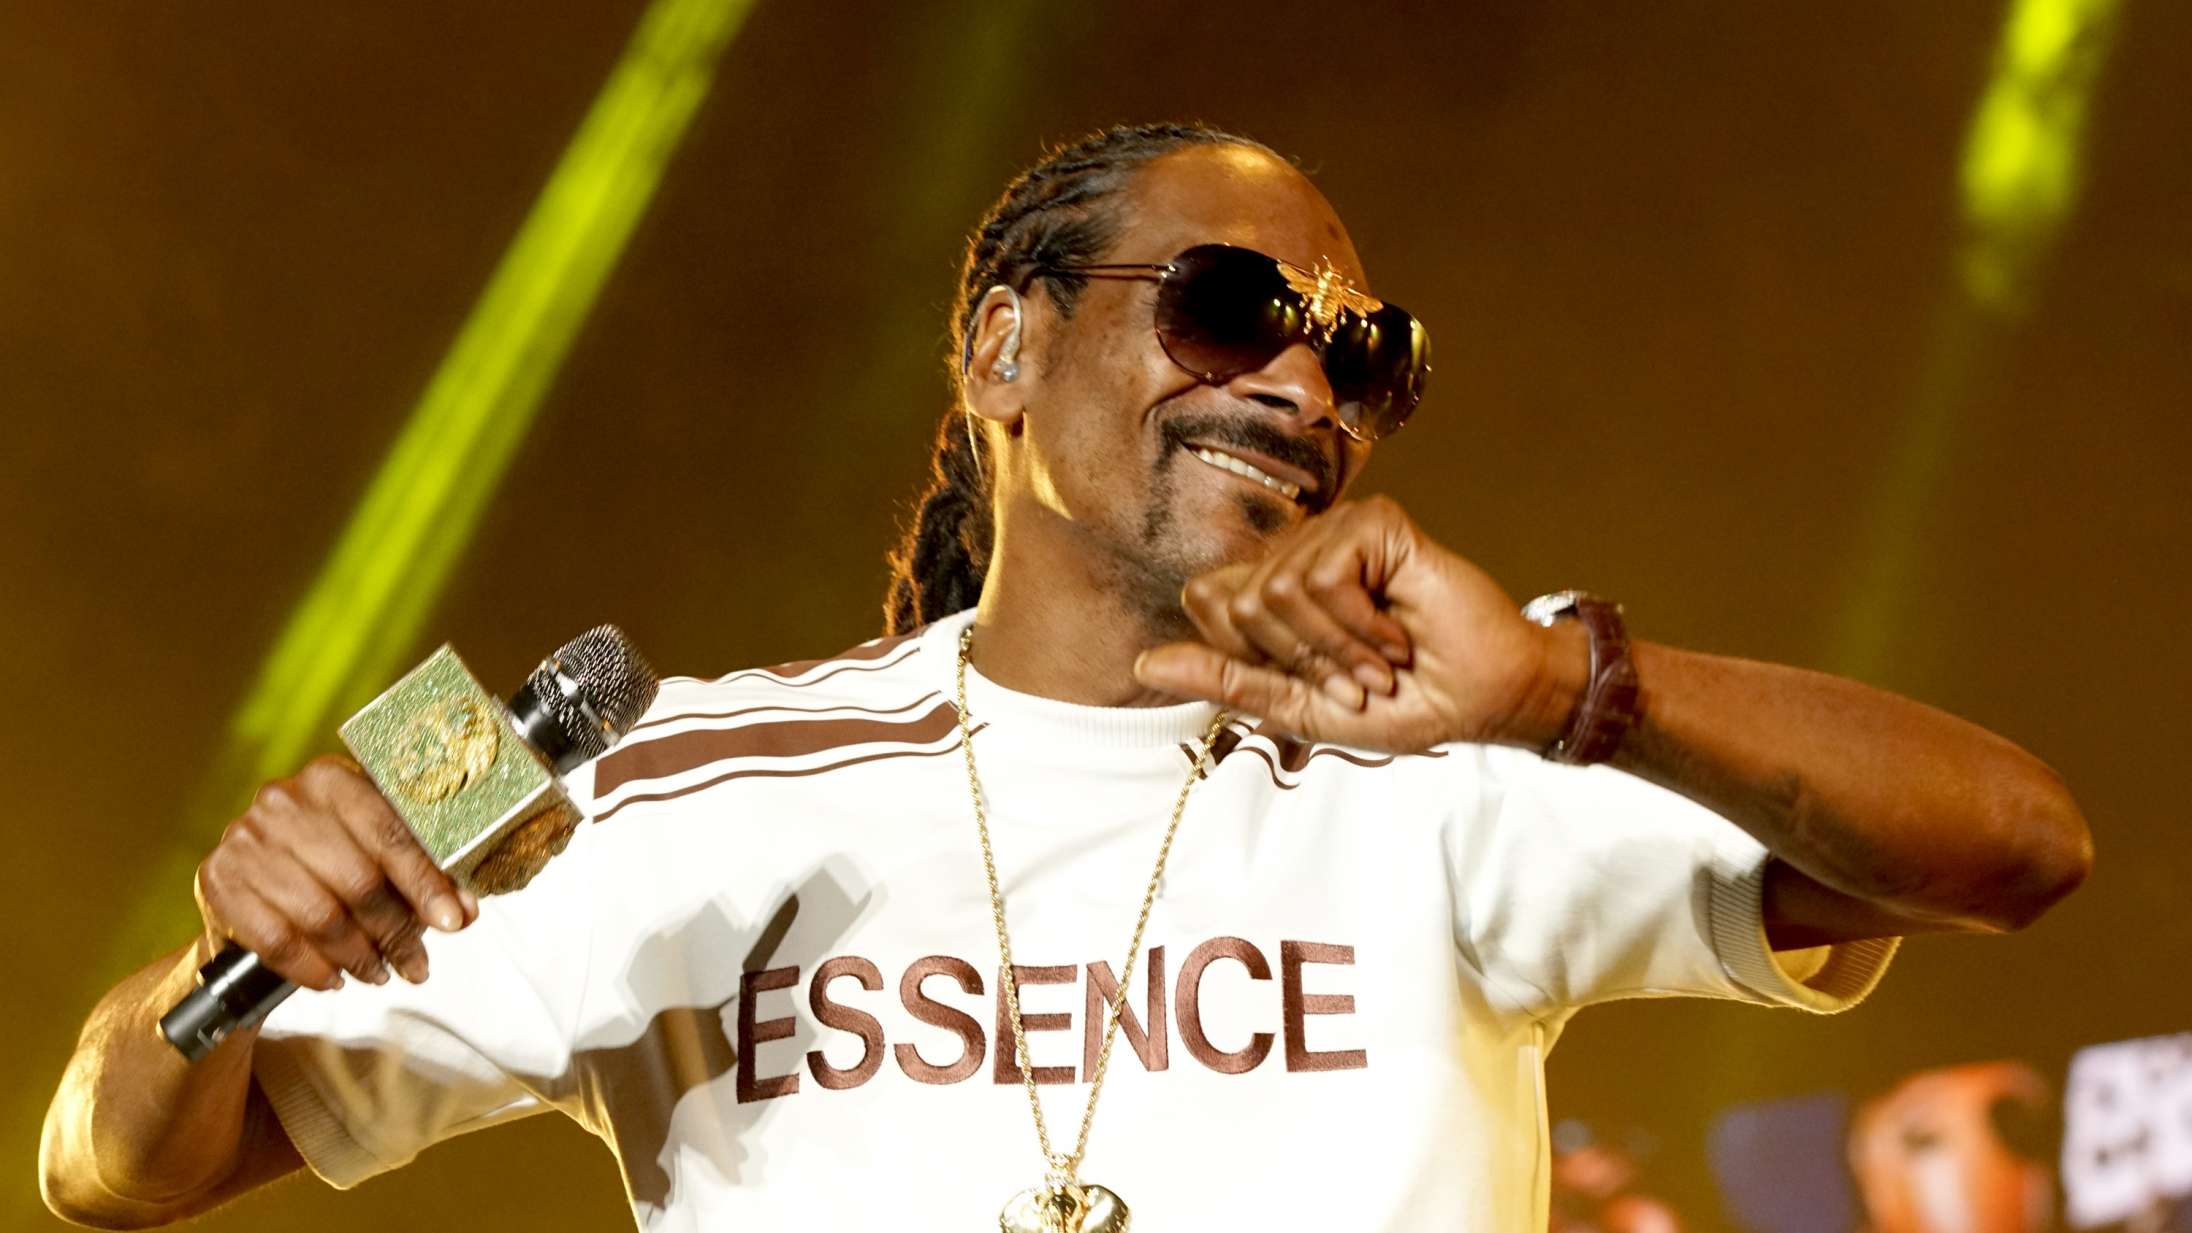 Efter kritisk interview: Snoop Dogg sender hilsen til Eminem – og kårer sine ti yndlingsrappere